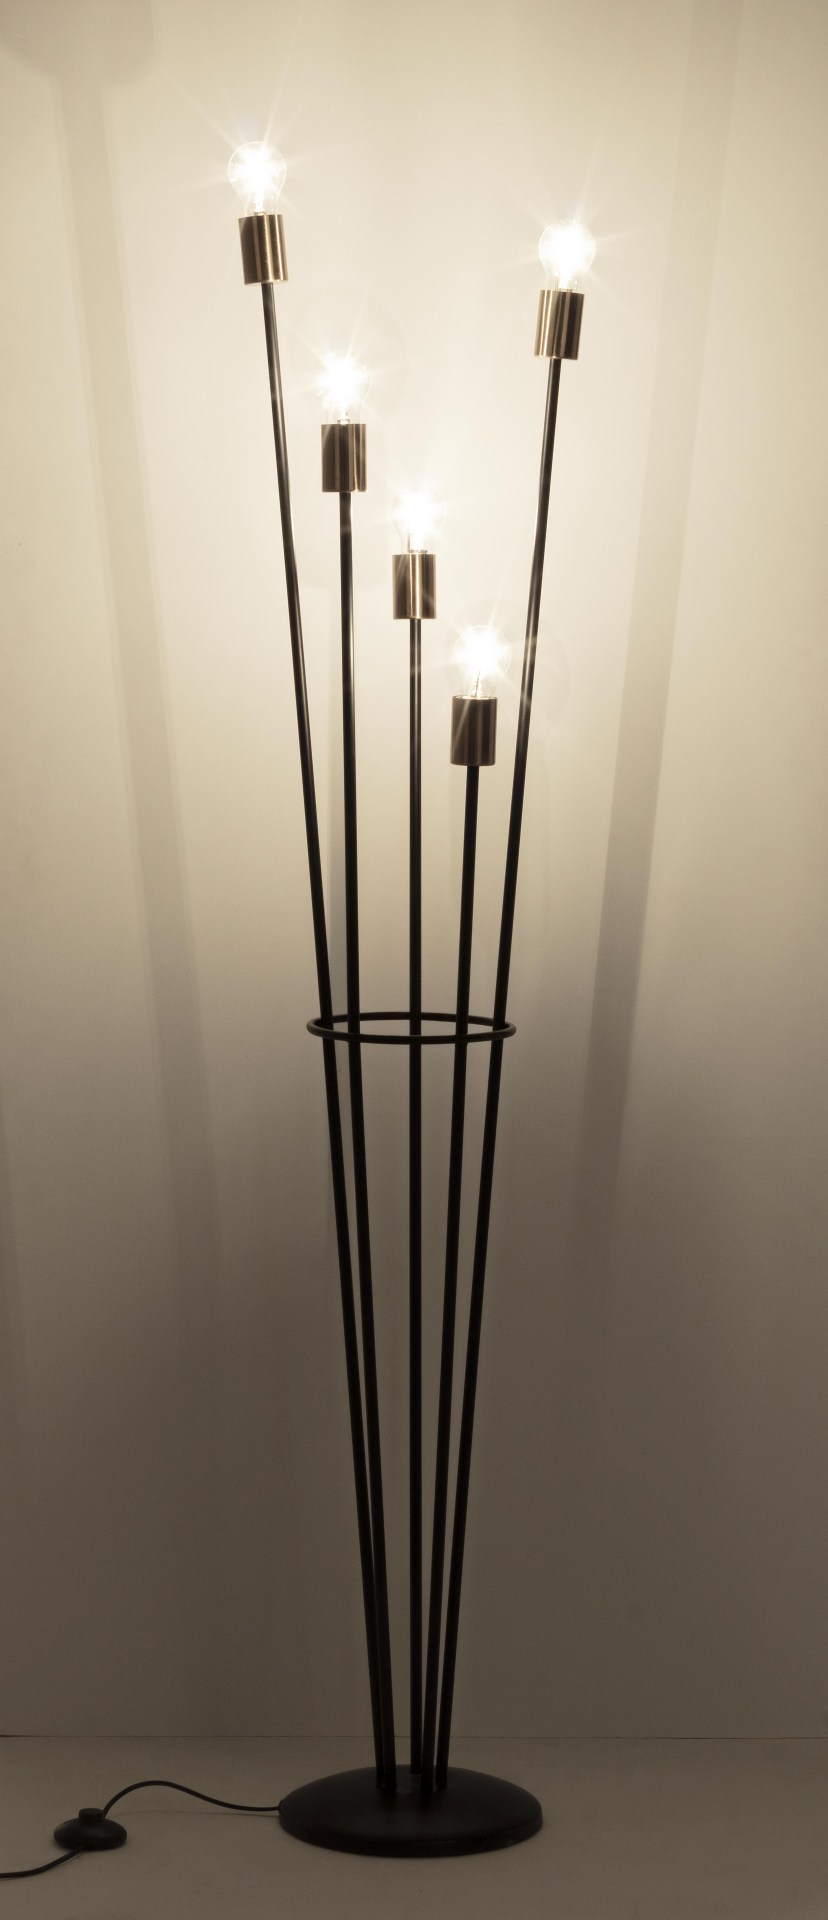 Die Stehleuchte Fackel überzeugt mit ihrem modernen Design. Gefertigt wurde sie aus Metall, welches einen schwarzen Farbton besitzt. Der Lampenschirm ist auch aus Glas. Die Lampe besitzt eine Höhe von 155 cm.